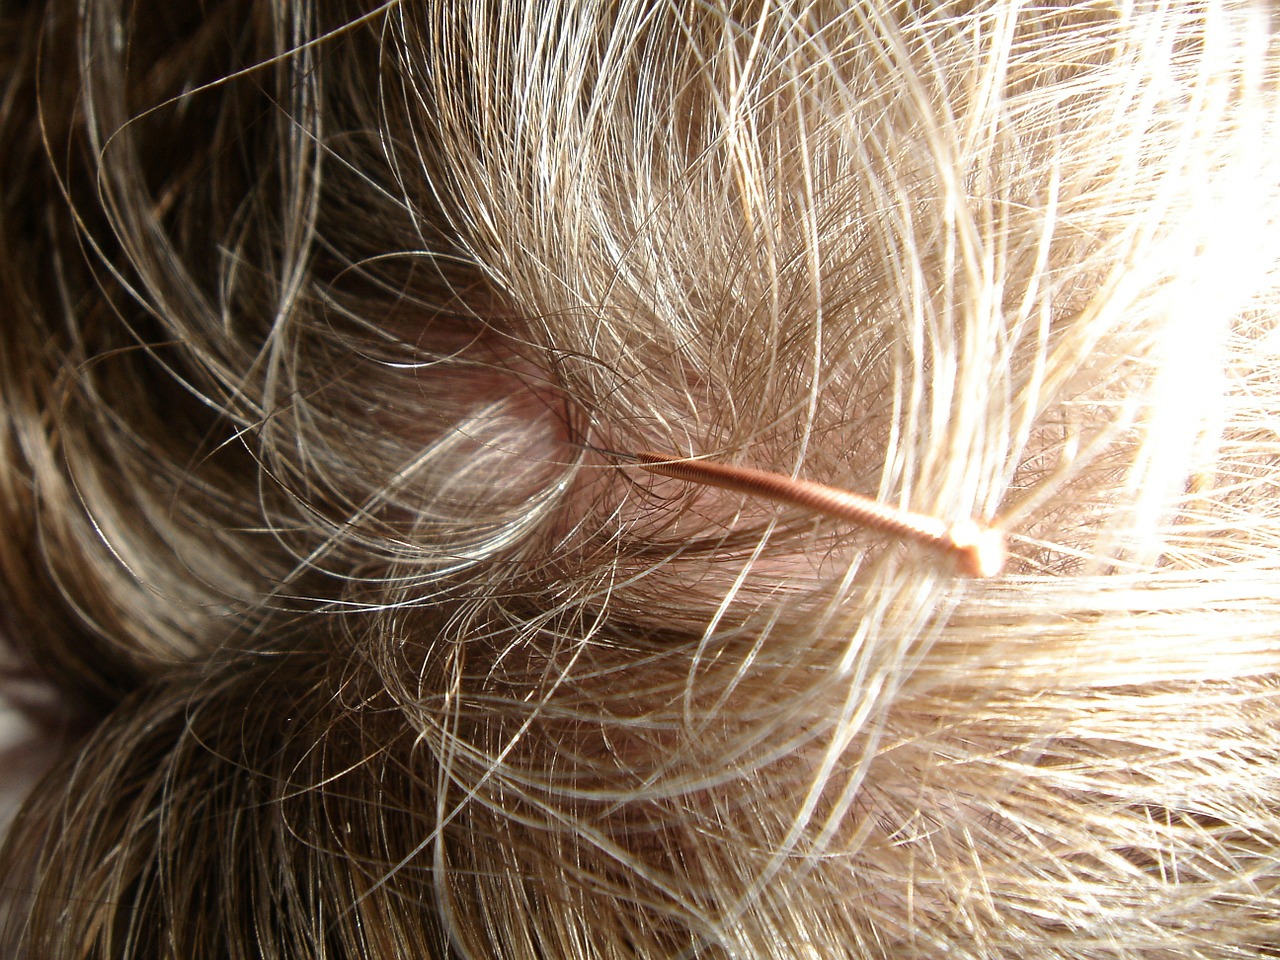 scalp